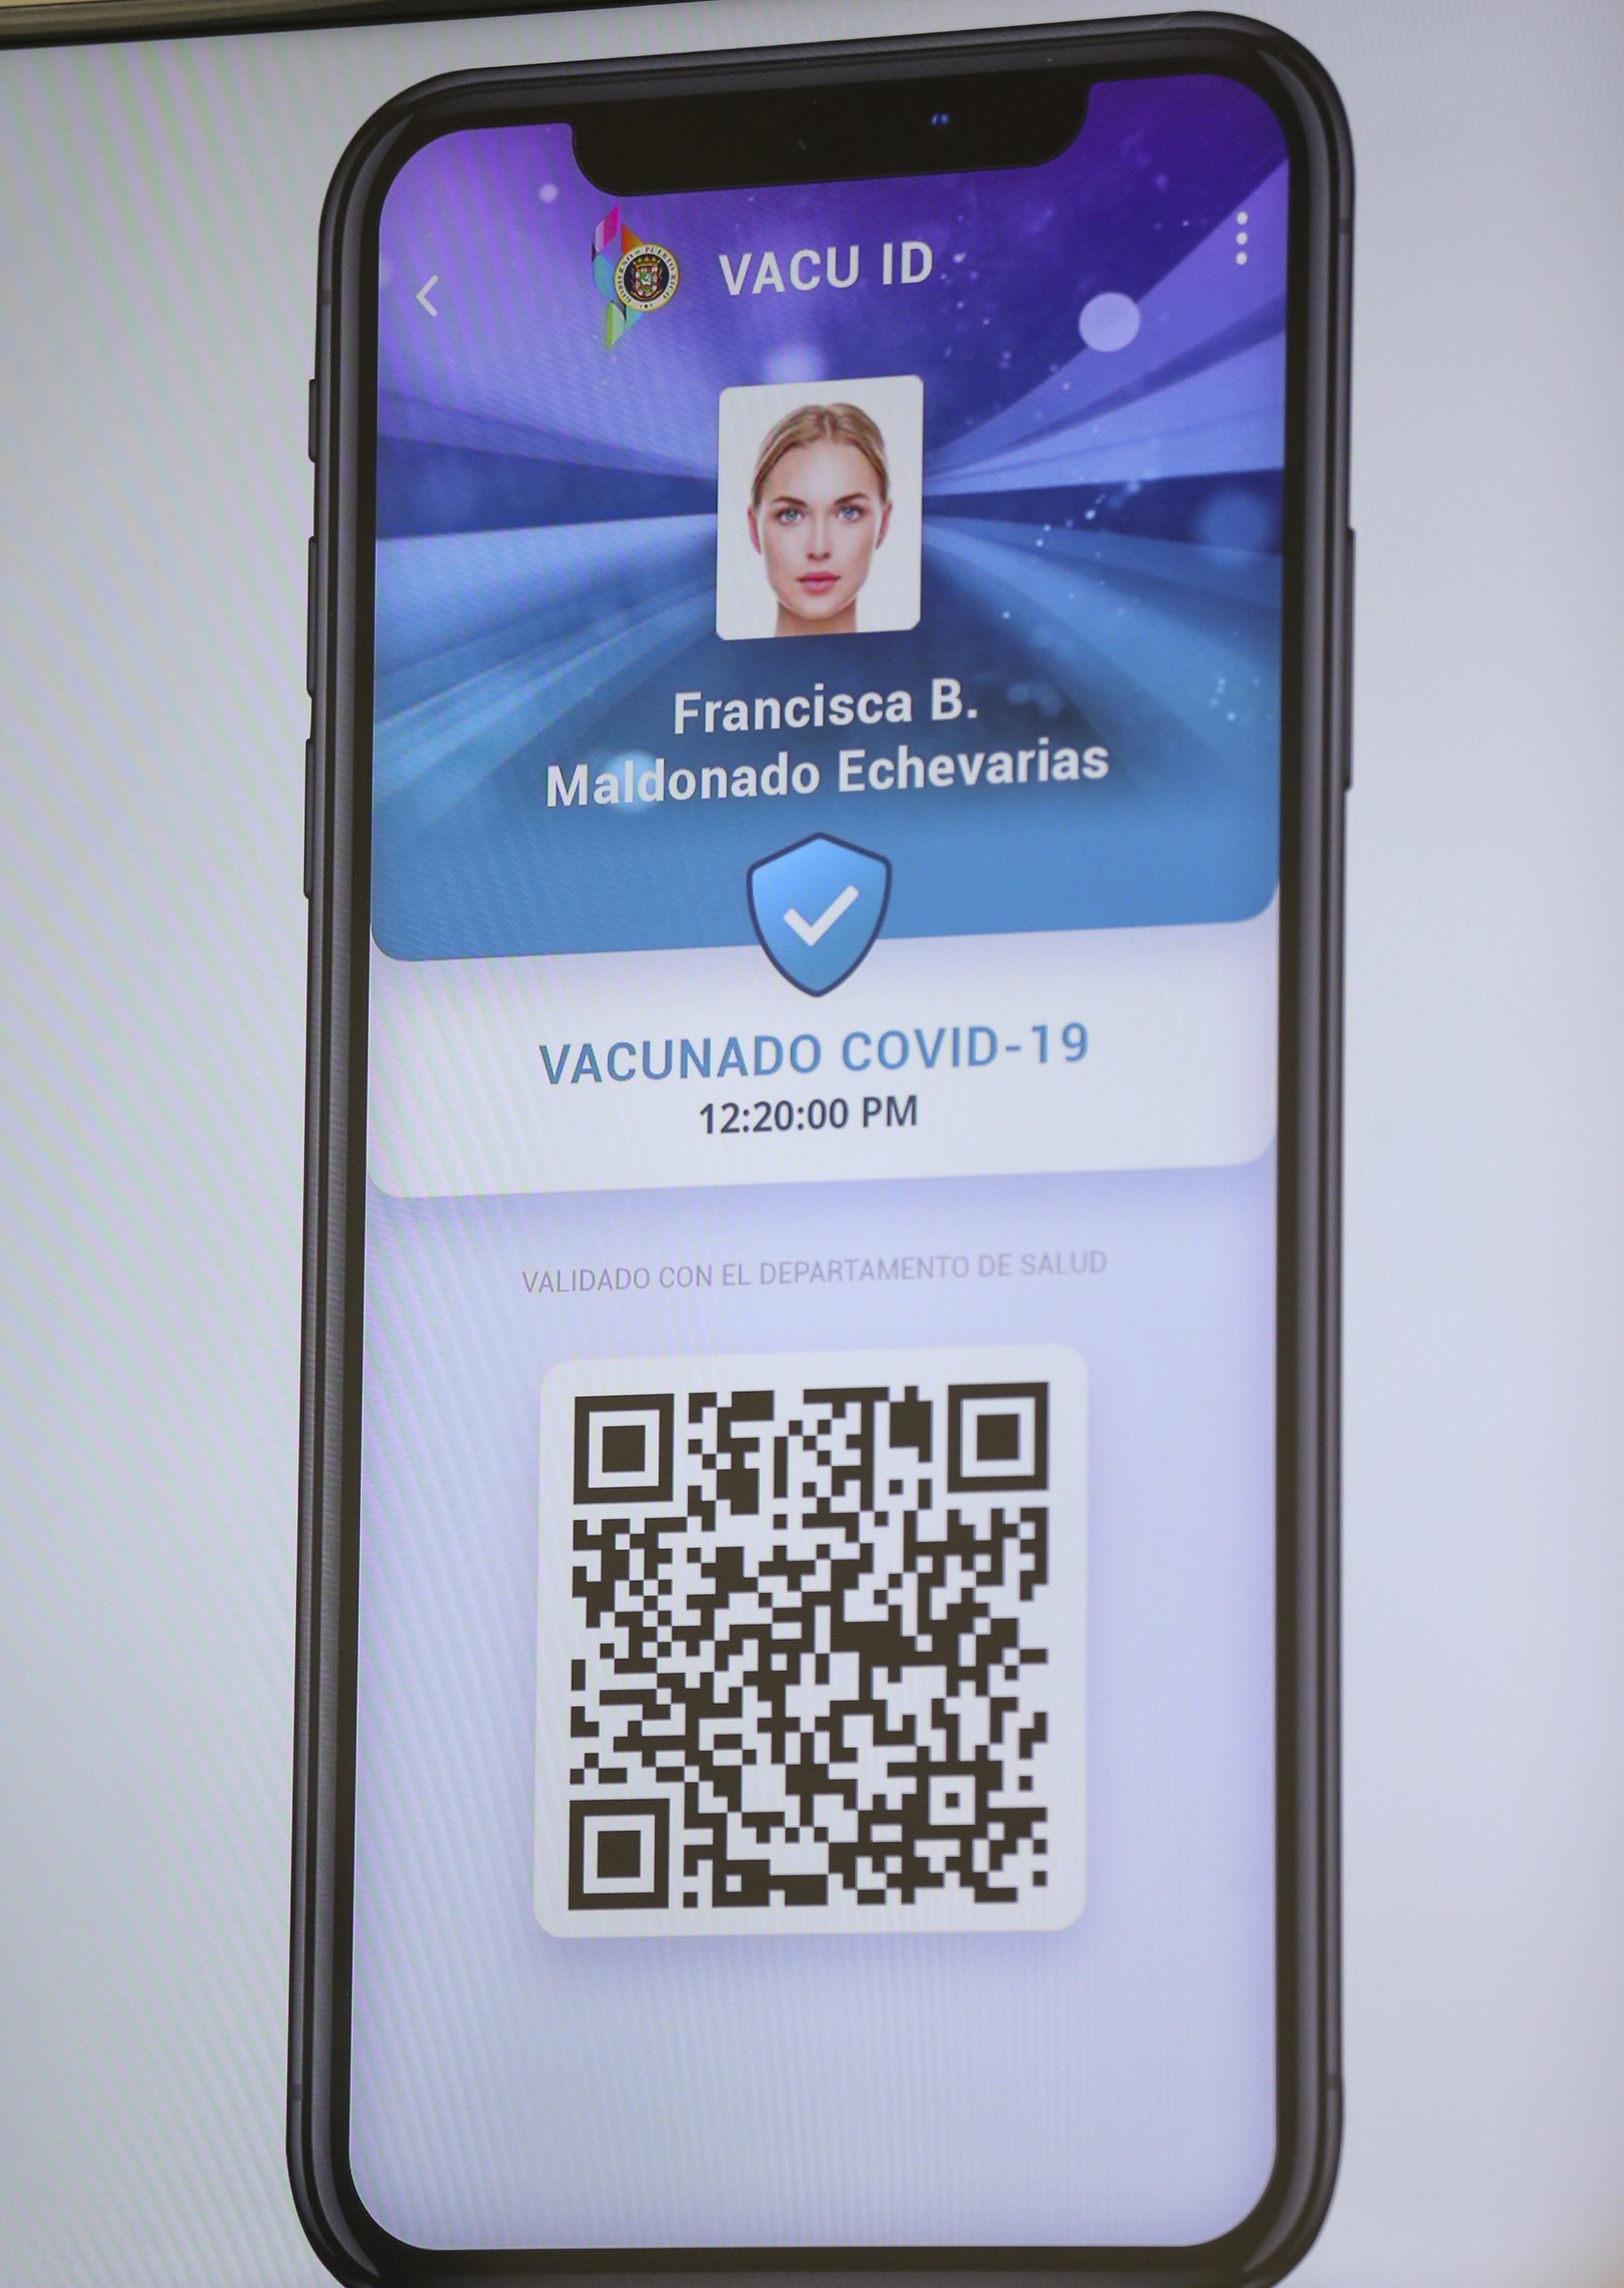 Ejemplo de cómo es el Vacu ID, identificación de vacunación contra el COVID-19 expedida por el gobierno de Puerto Rico.